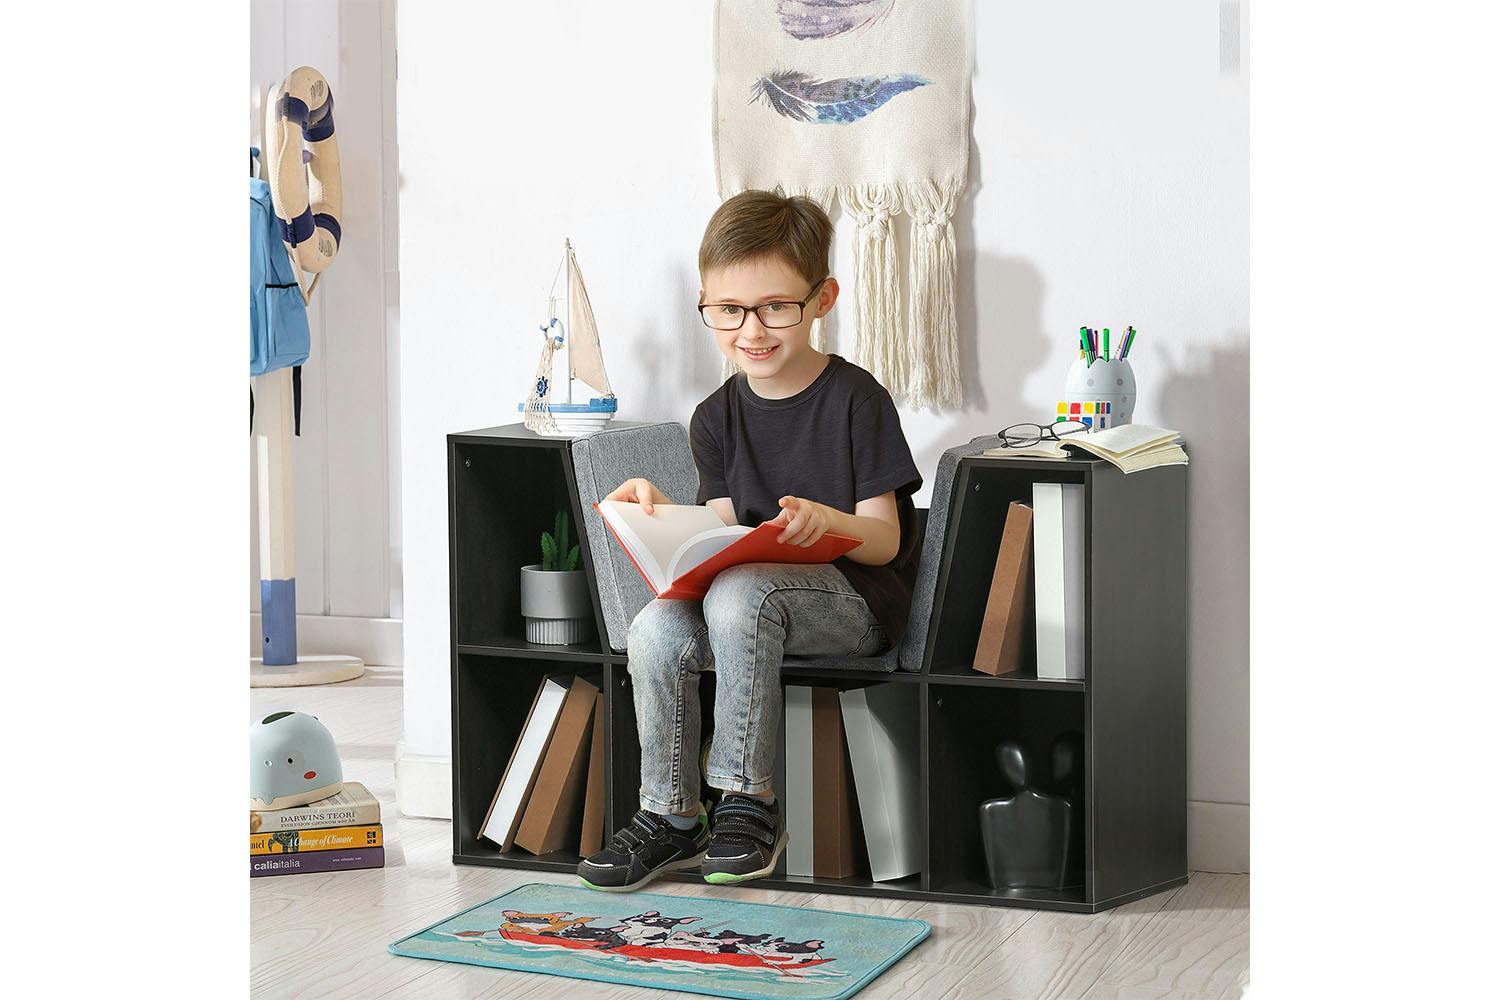 Homcom 311-046BN Kids Bookcase Shelf Storage Cabinet Unit | Brown